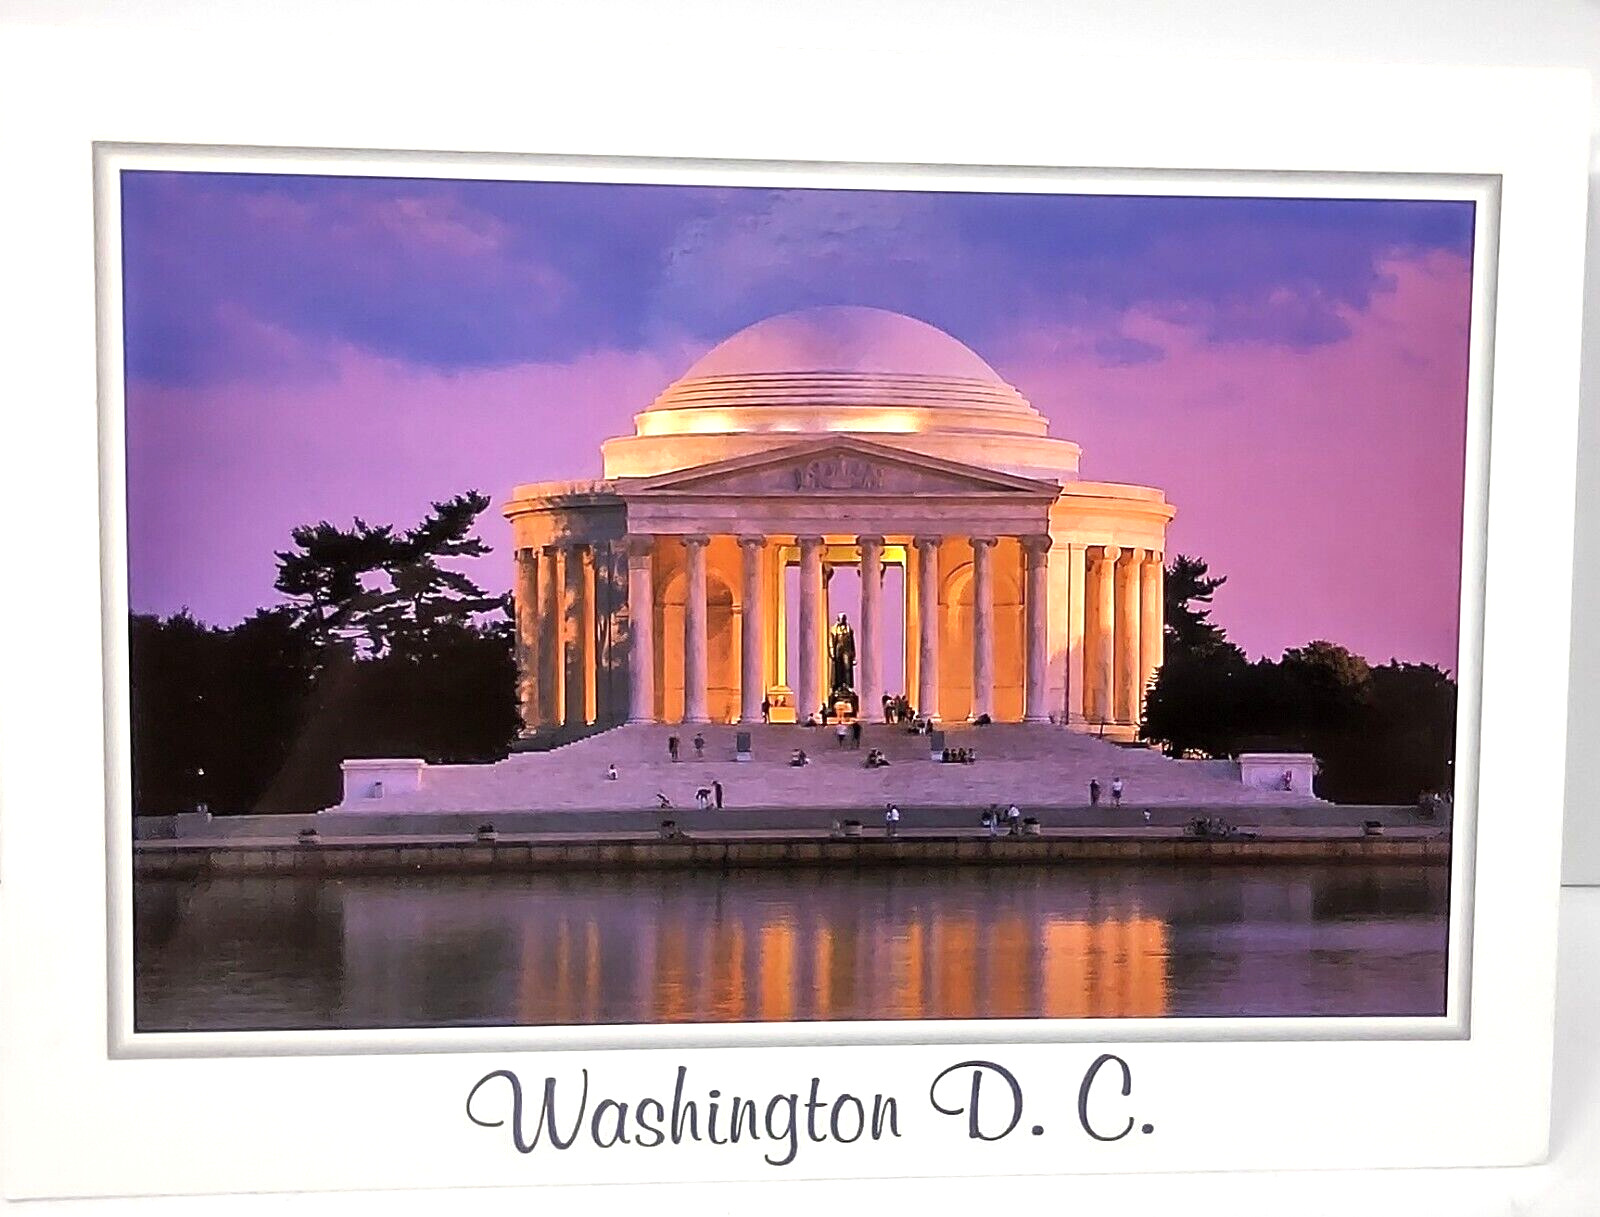 Jefferson Memorial Washington D.C. Postcard Unposted